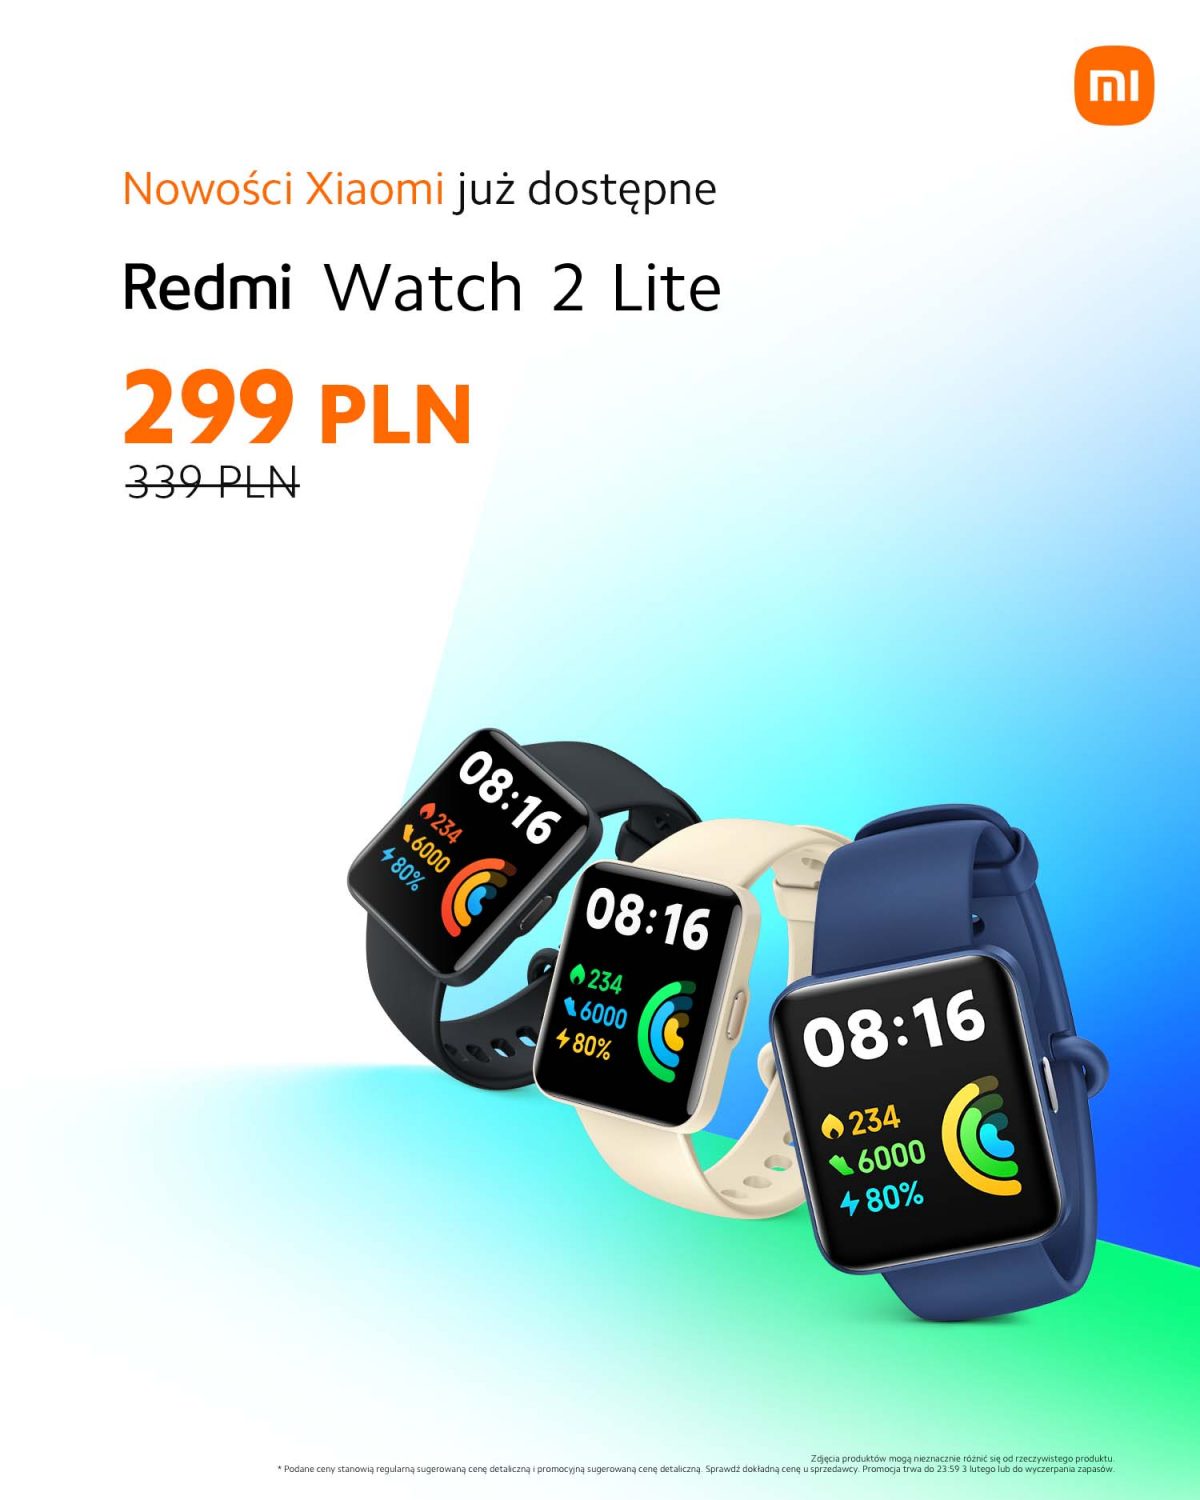 promocja Xiaomi Redmi Watch 2 Lite cena opinie gdzie kupić najtaniej